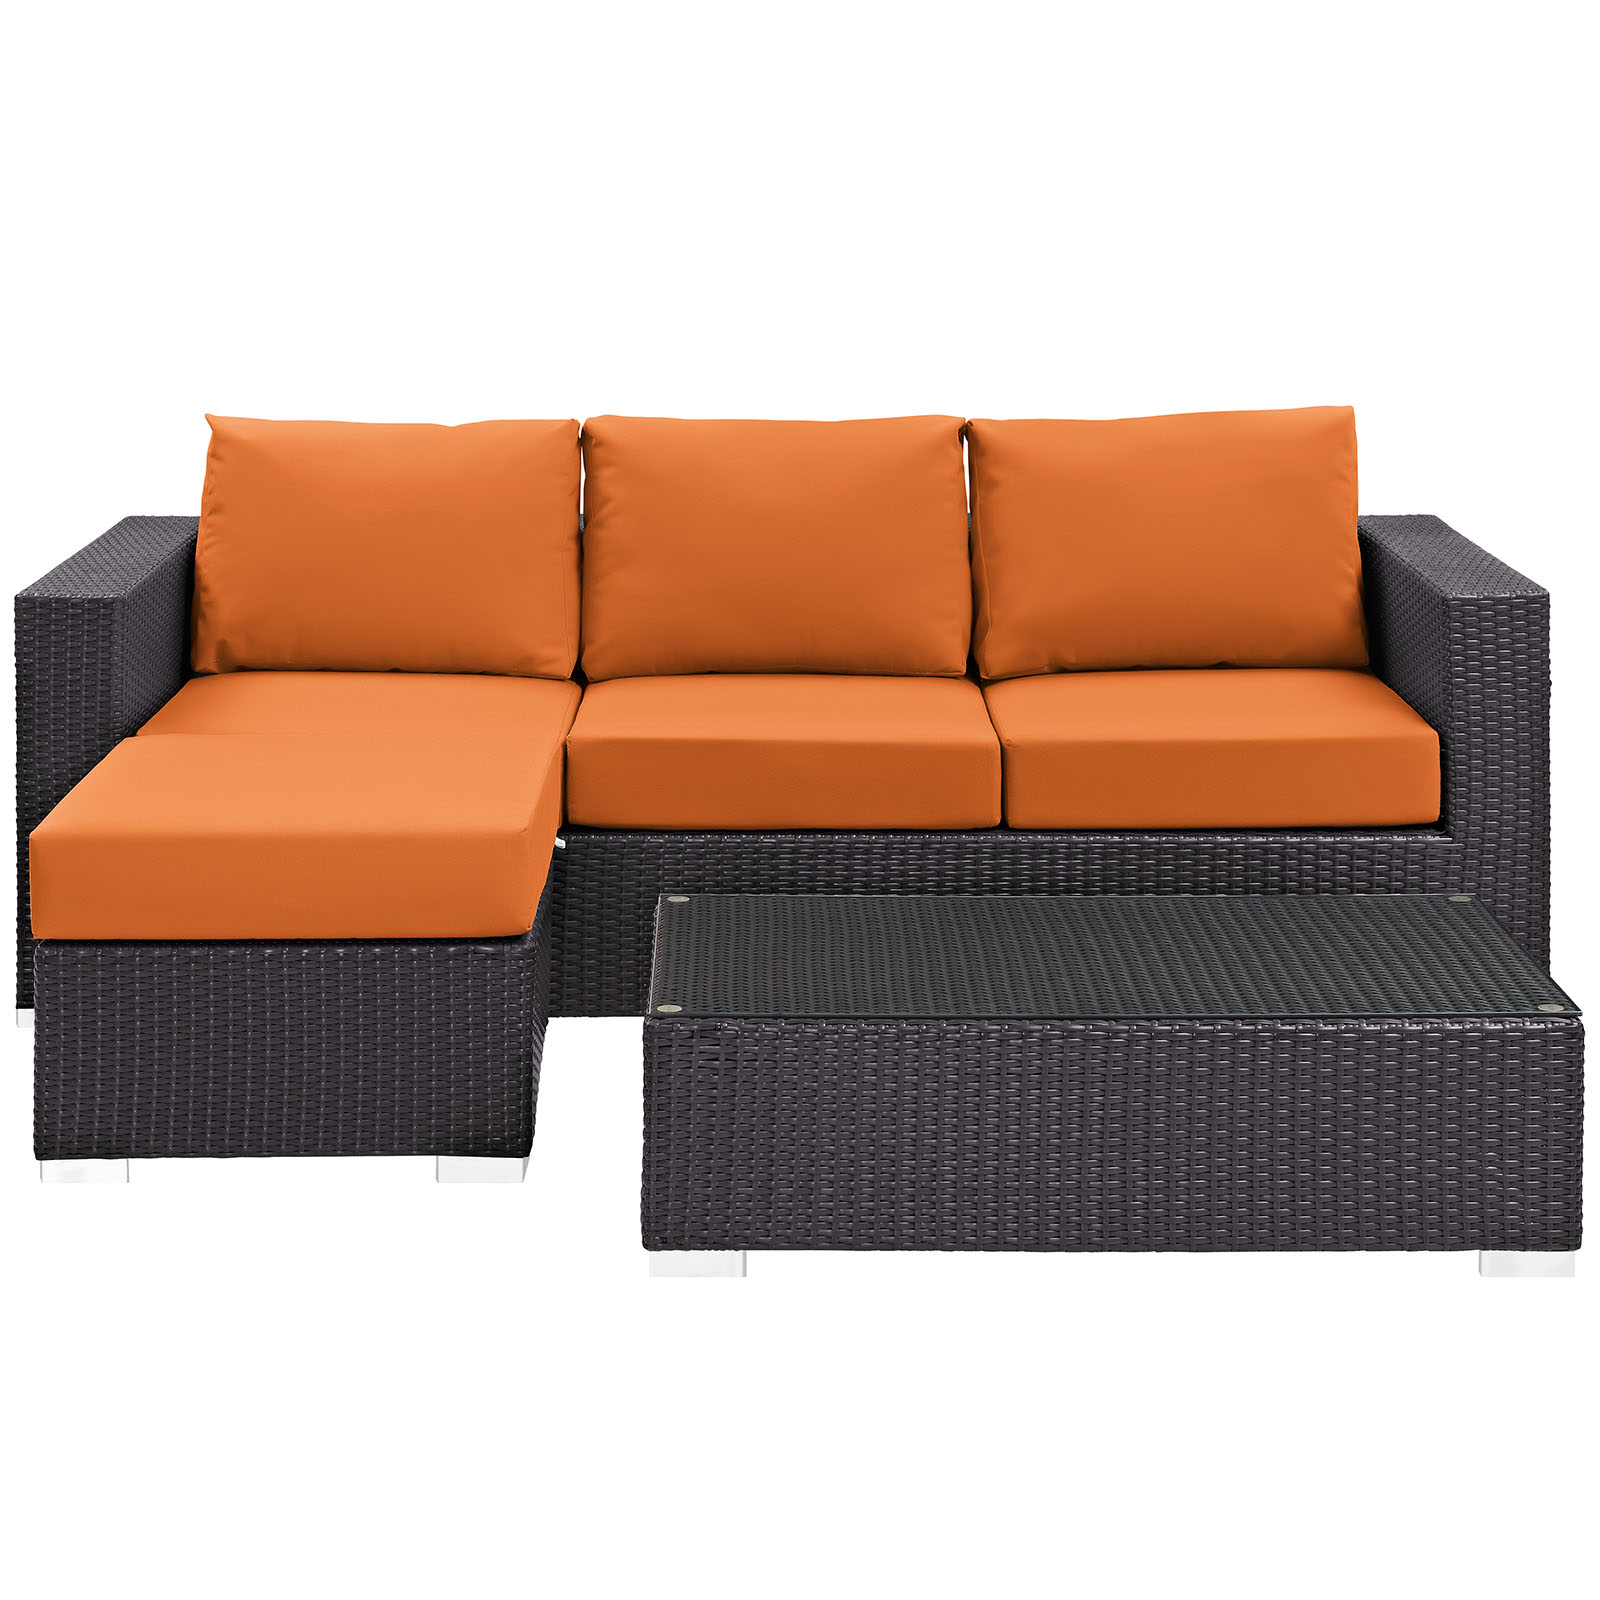 Modway Convene 3 Piece Outdoor Patio Sofa Set in Espresso Orange - image 4 of 7